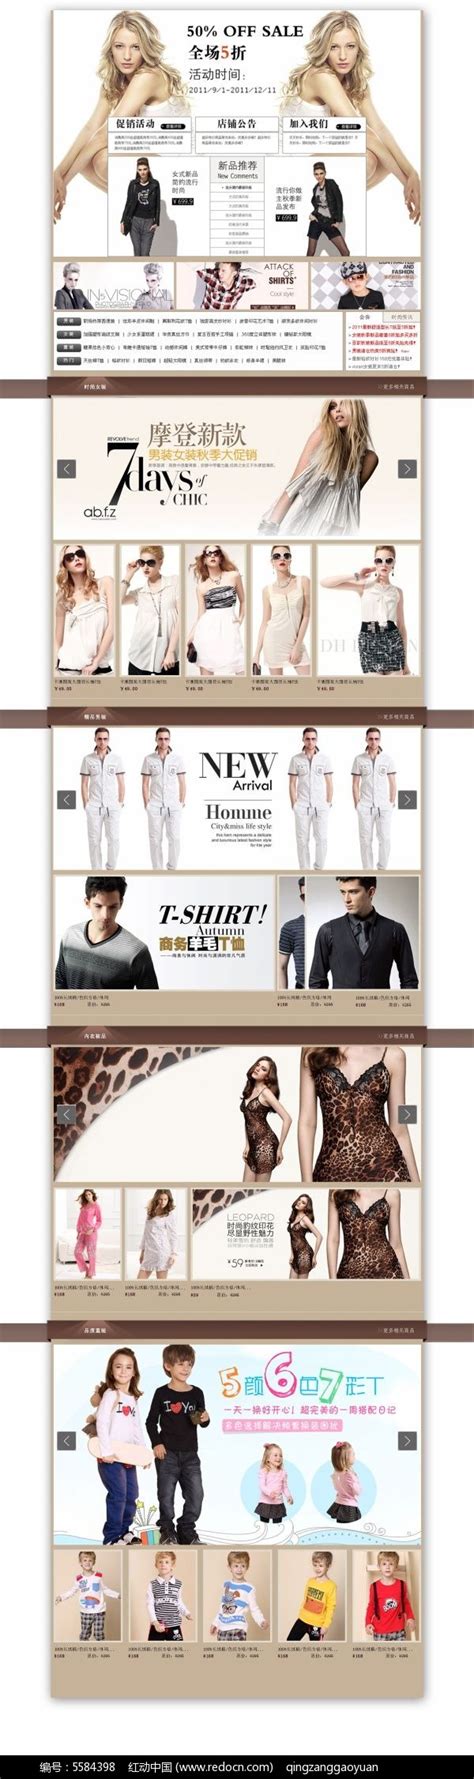 新开时尚服装店营销策划,新开时尚服装店营销策划怎么写